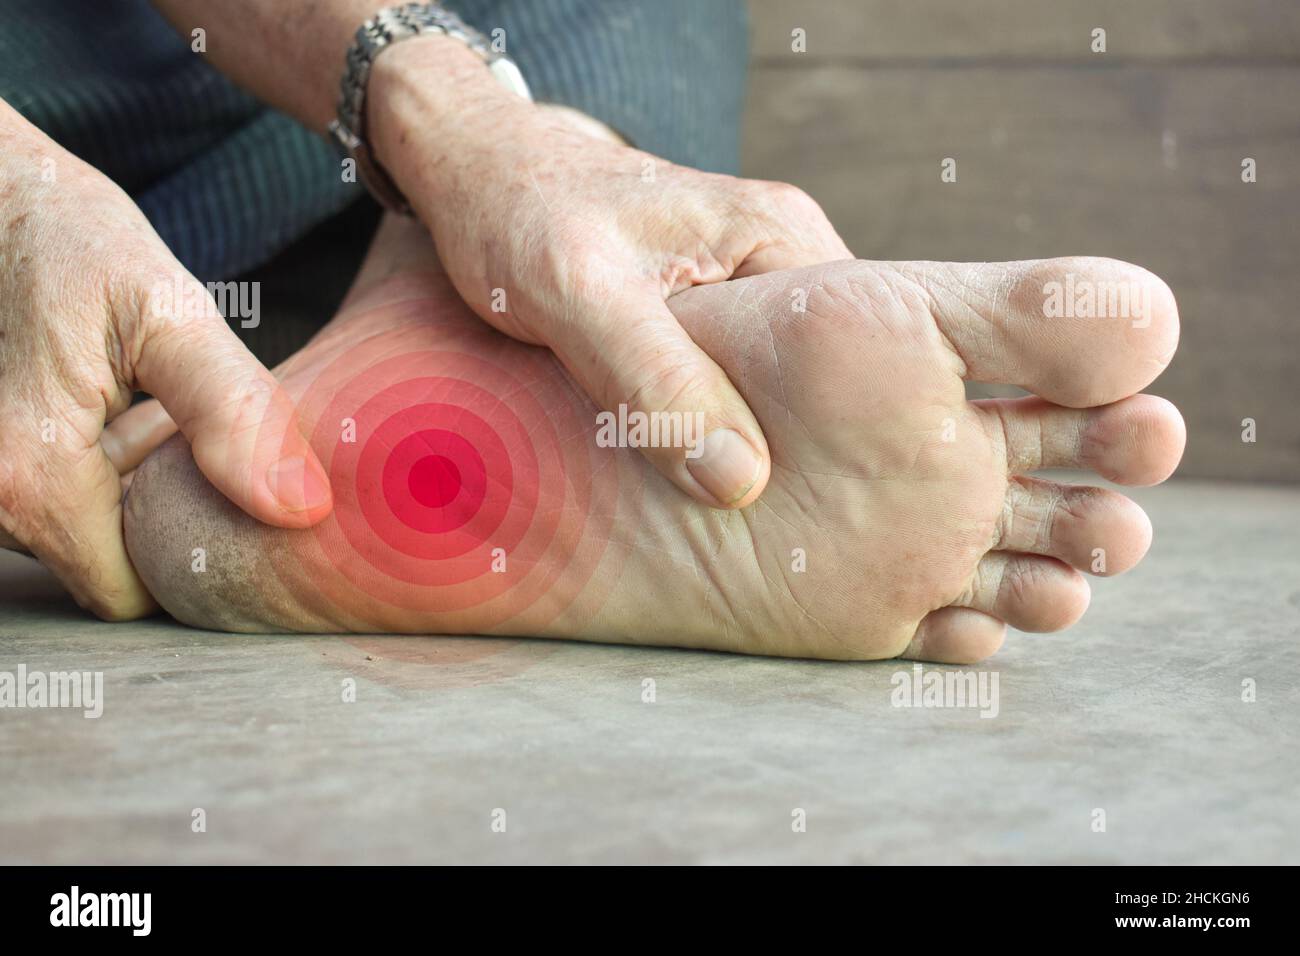 Sensation de picotement et de brûlure au pied d'un vieil homme asiatique avec diabète. Douleur au pied. Problèmes de neuropathie sensorielle. Problèmes de nerfs des pieds. Fasciite plantaire Banque D'Images